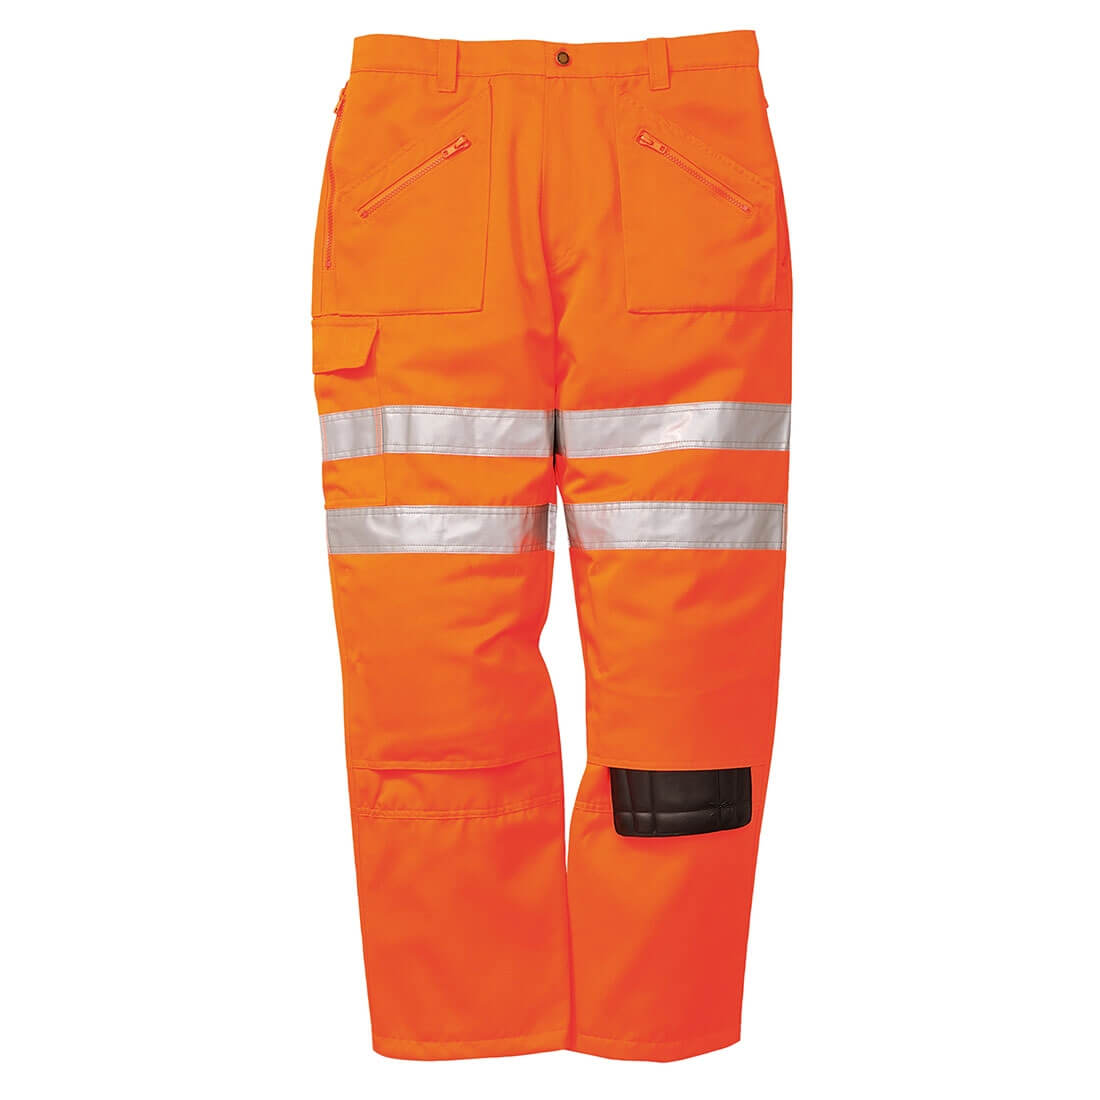 Pantalon Action Rail - Les vêtements de protection